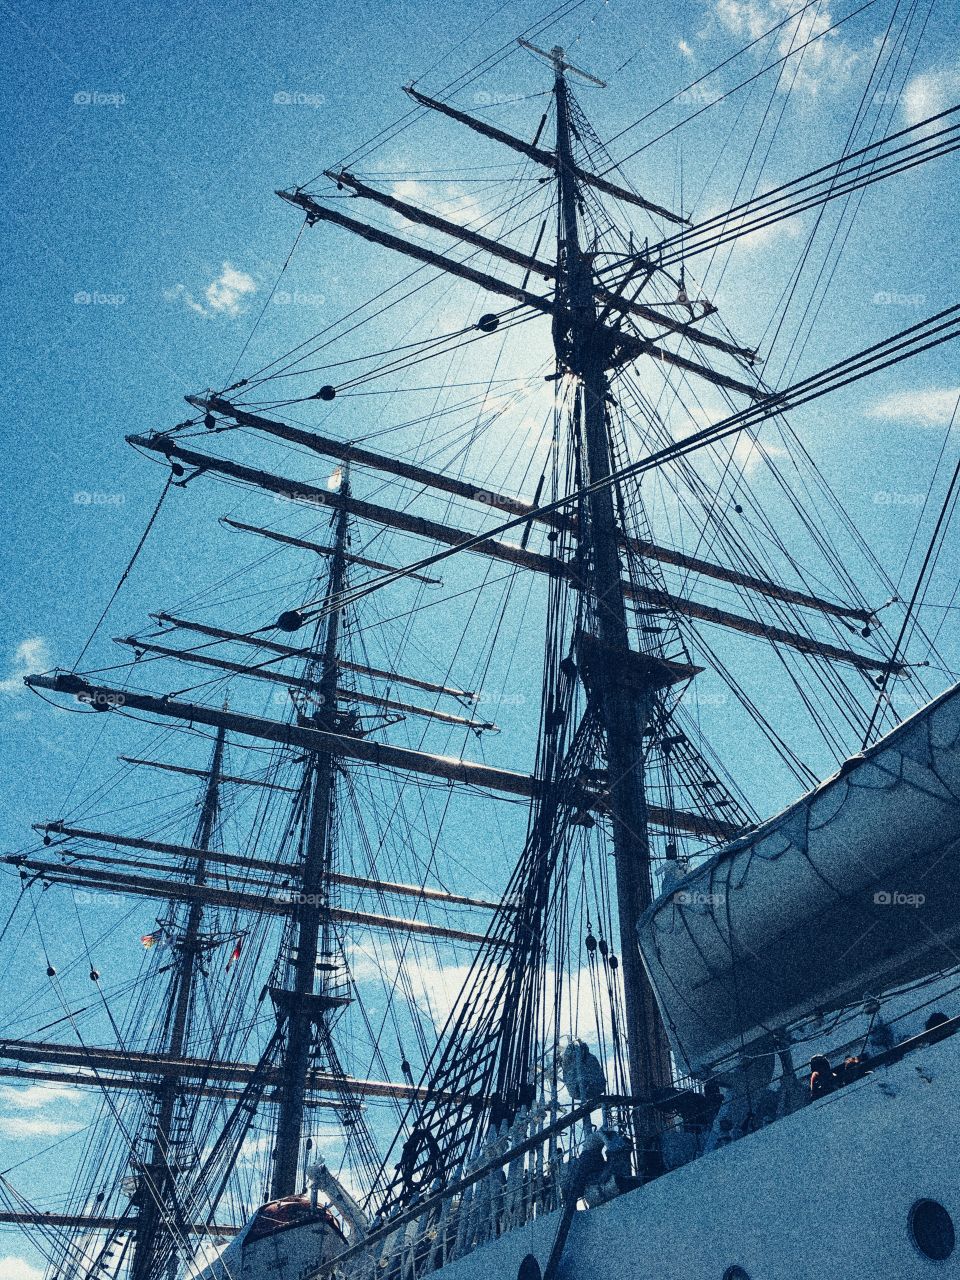 Sun shining through masts on tall ship